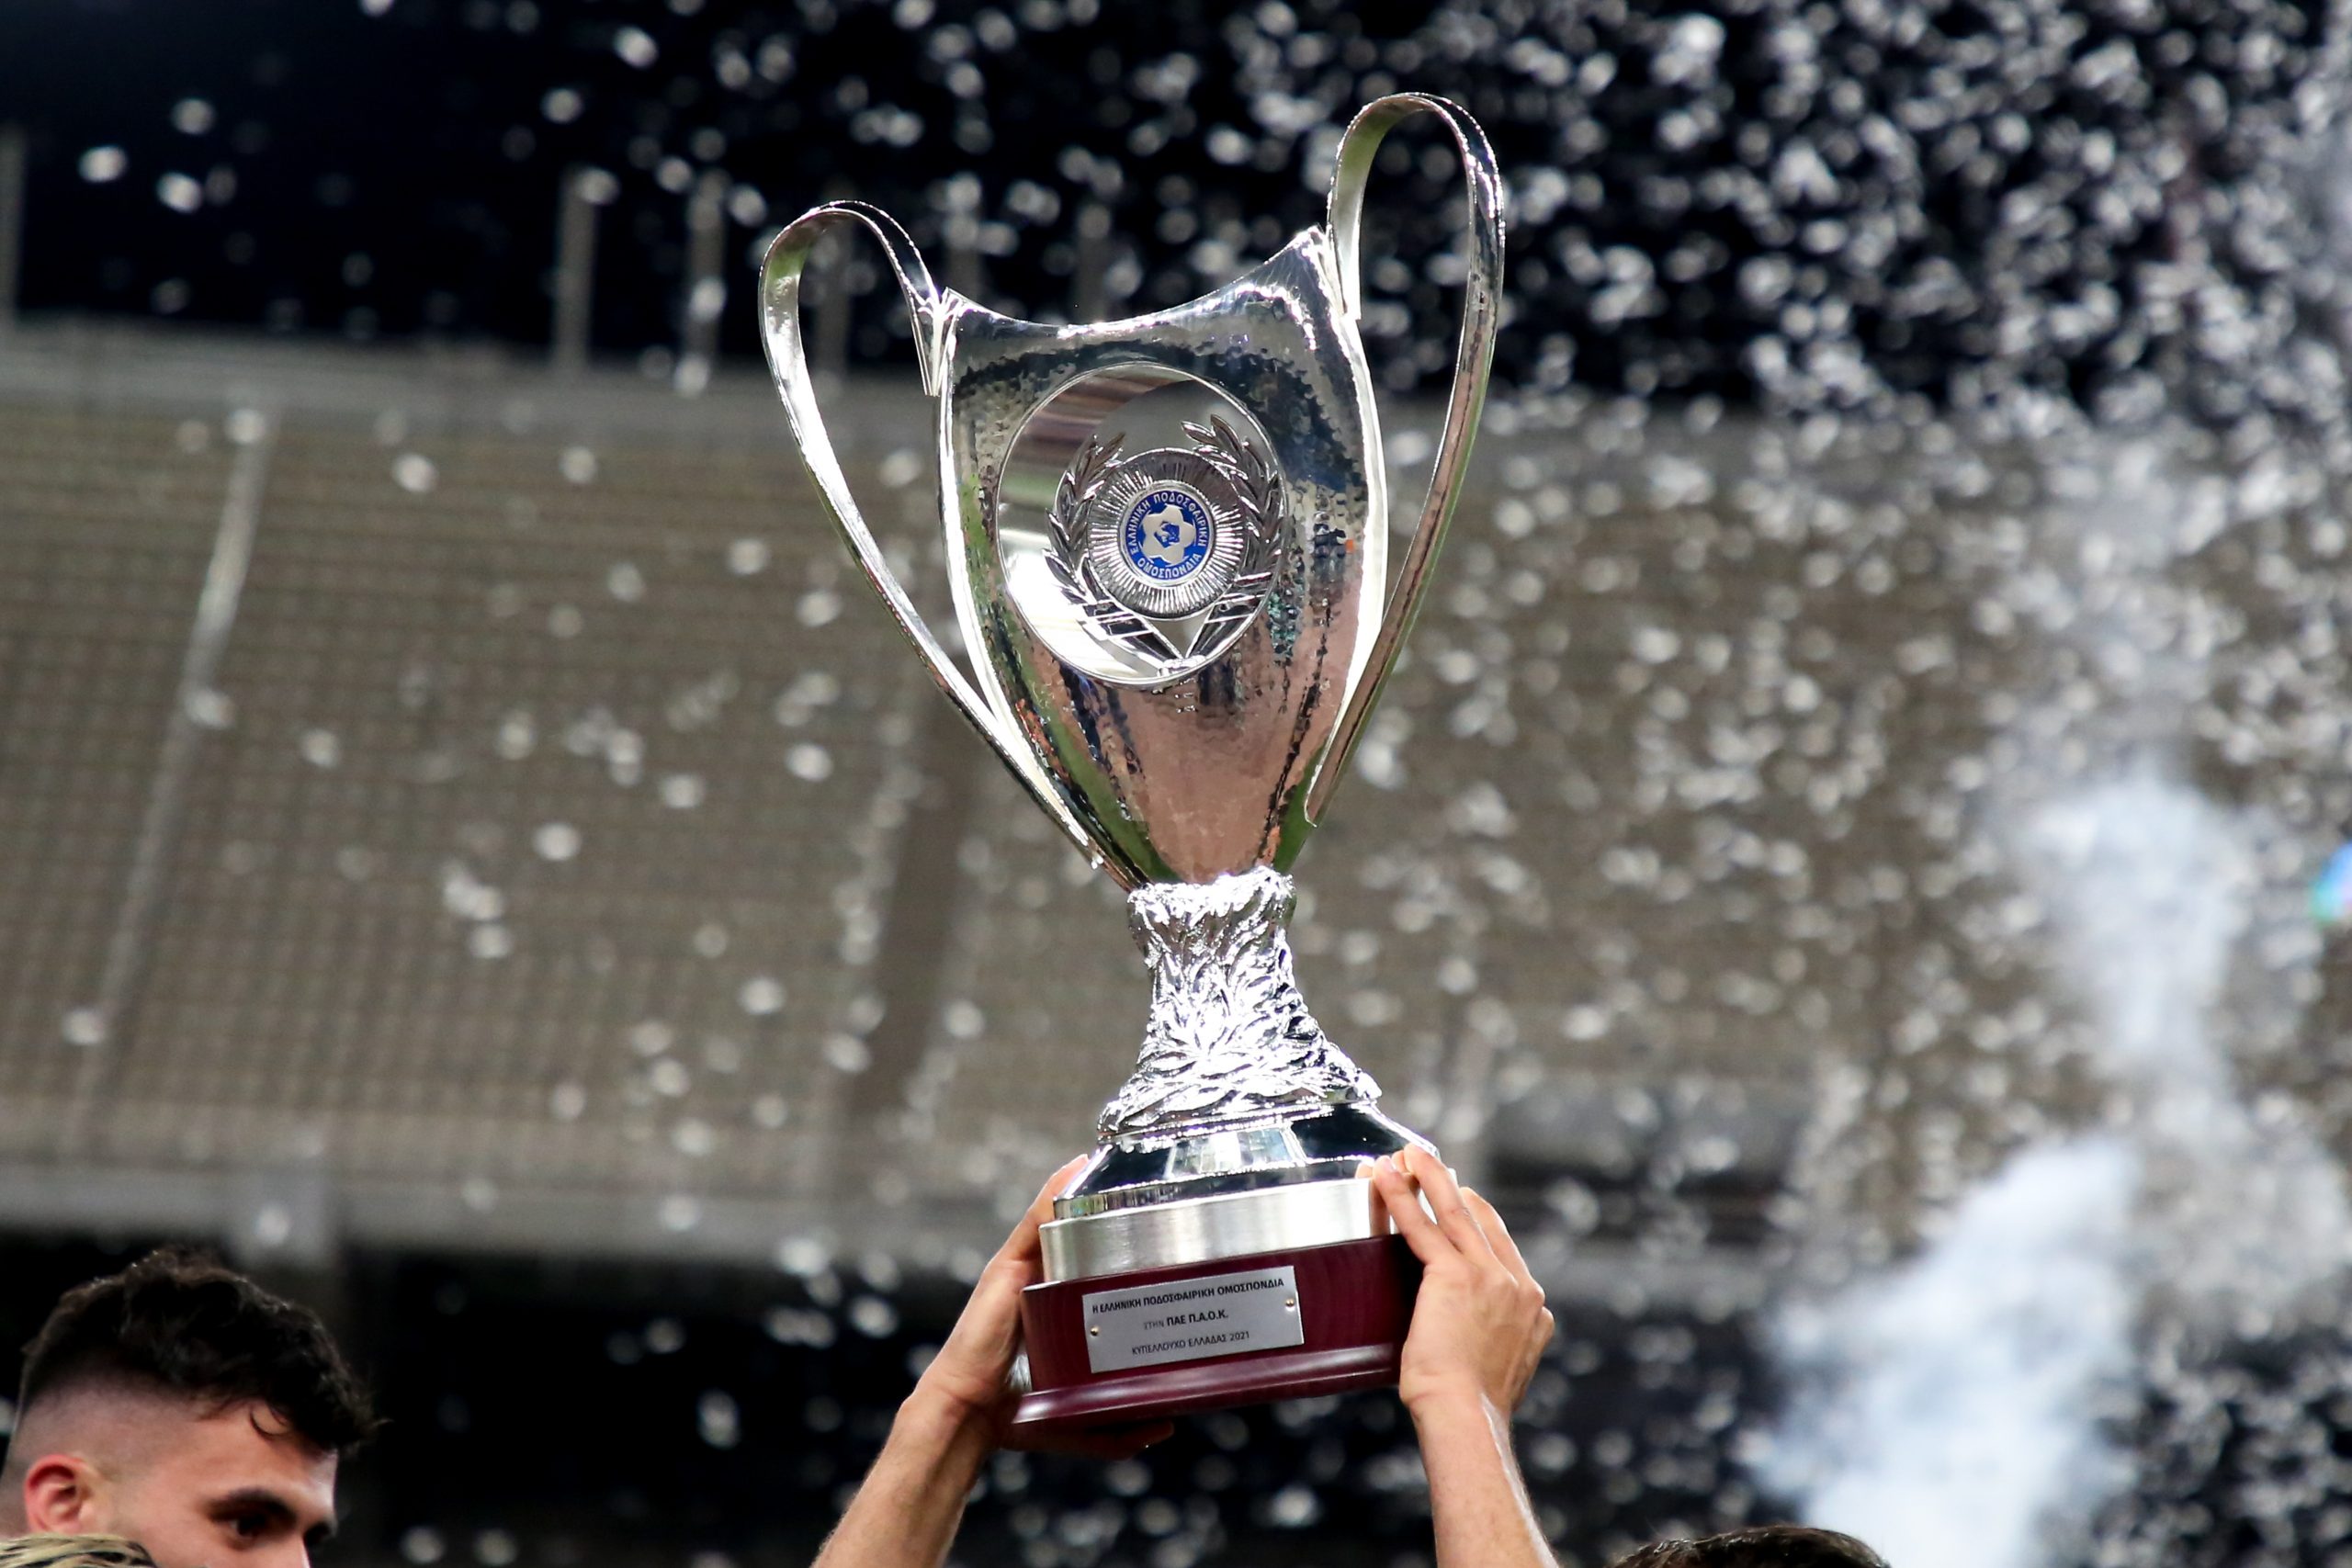 Τάκης Μπαλτάκος: «Τελικός Κυπέλλου Ελλάδας στο εξωτερικό μόνο αν θέλουν οι ομάδες – Τα έσοδα θα είναι τετραπλάσια»